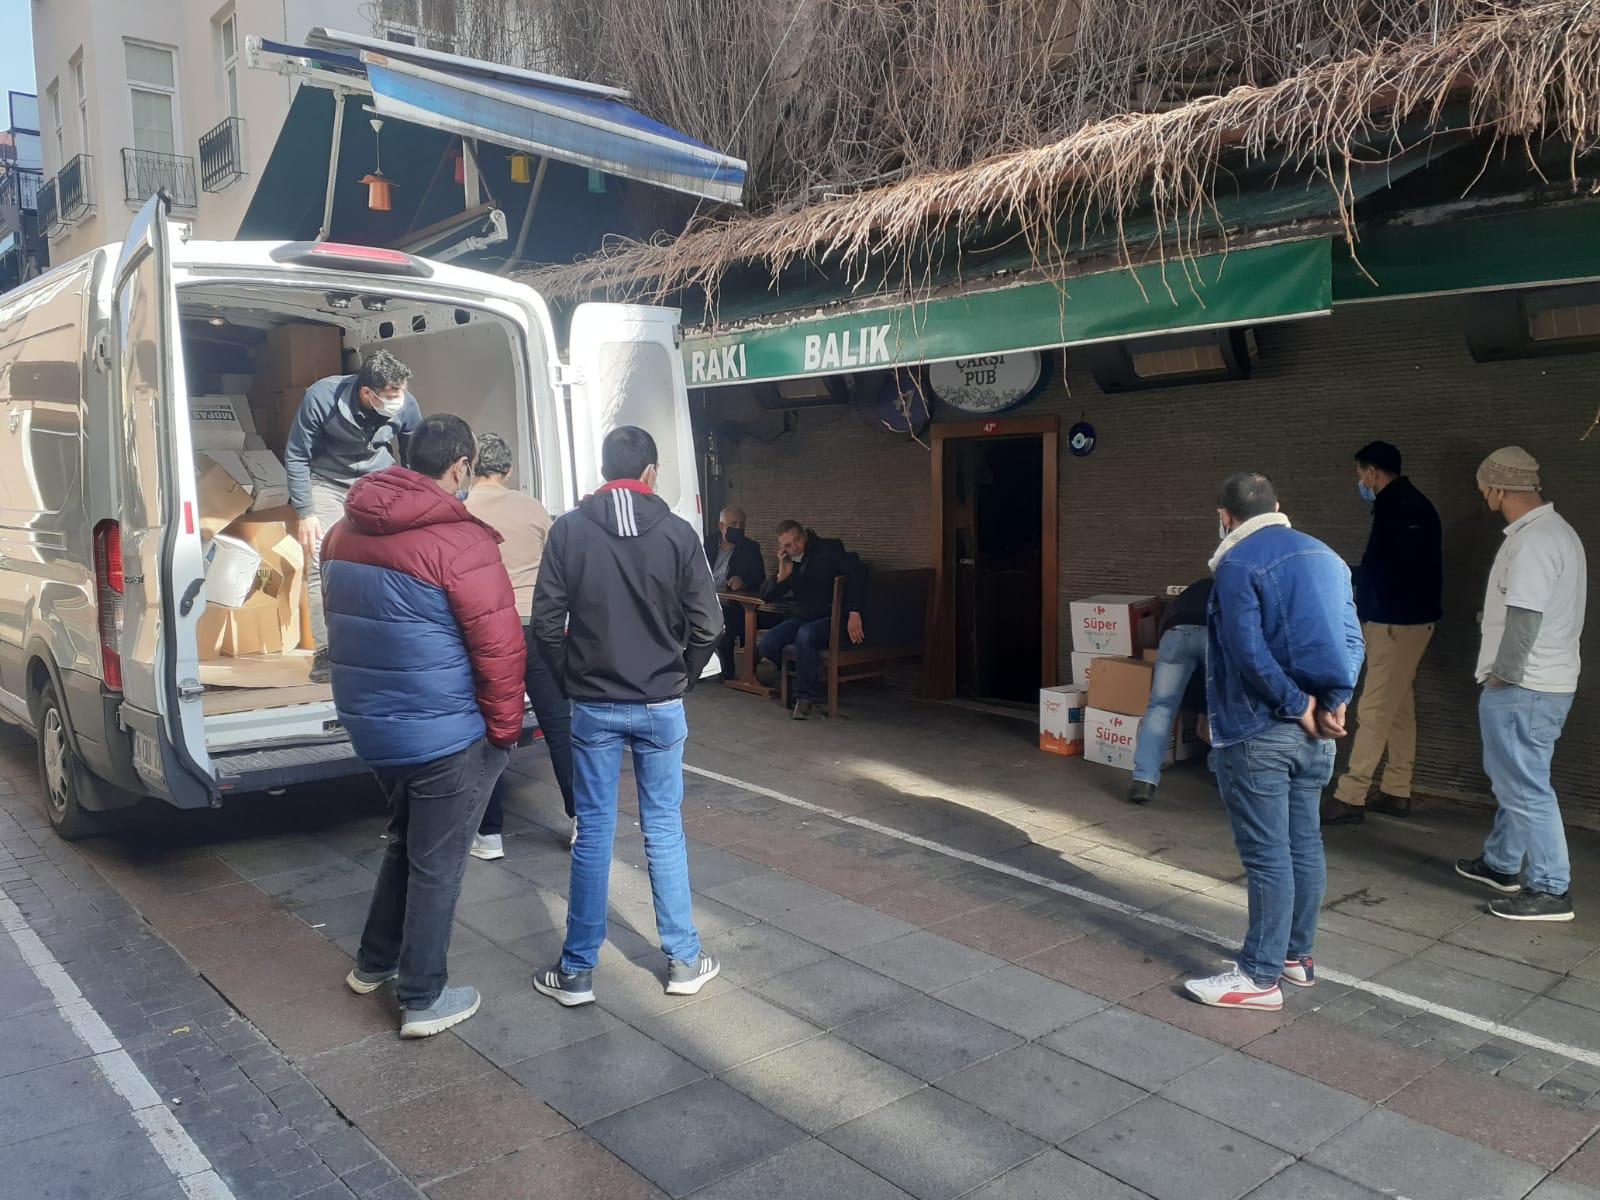 Kadıköy Belediyesi’nden gönderilen gıda yardımı kolilerini ihtiyaç sahibi kapalı iş yerlerinin personeline dağıtımını yaptık